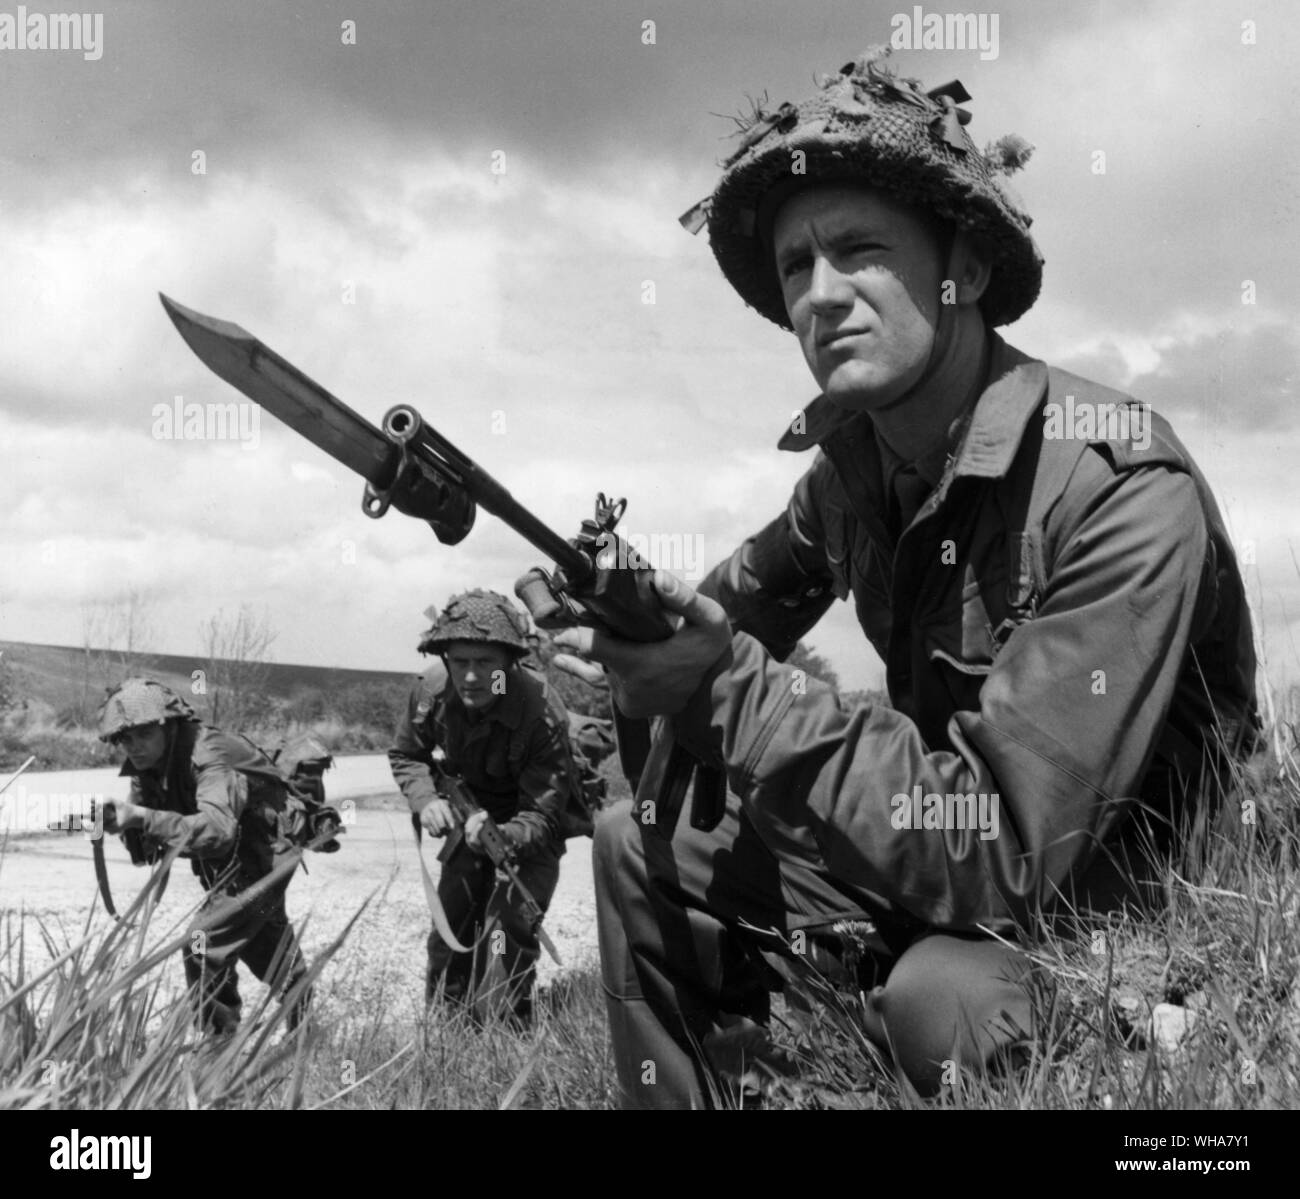 Le Black Watch Regiment lors de l'exercice à Salisbury Wiltshire Juillet 1962. Banque D'Images